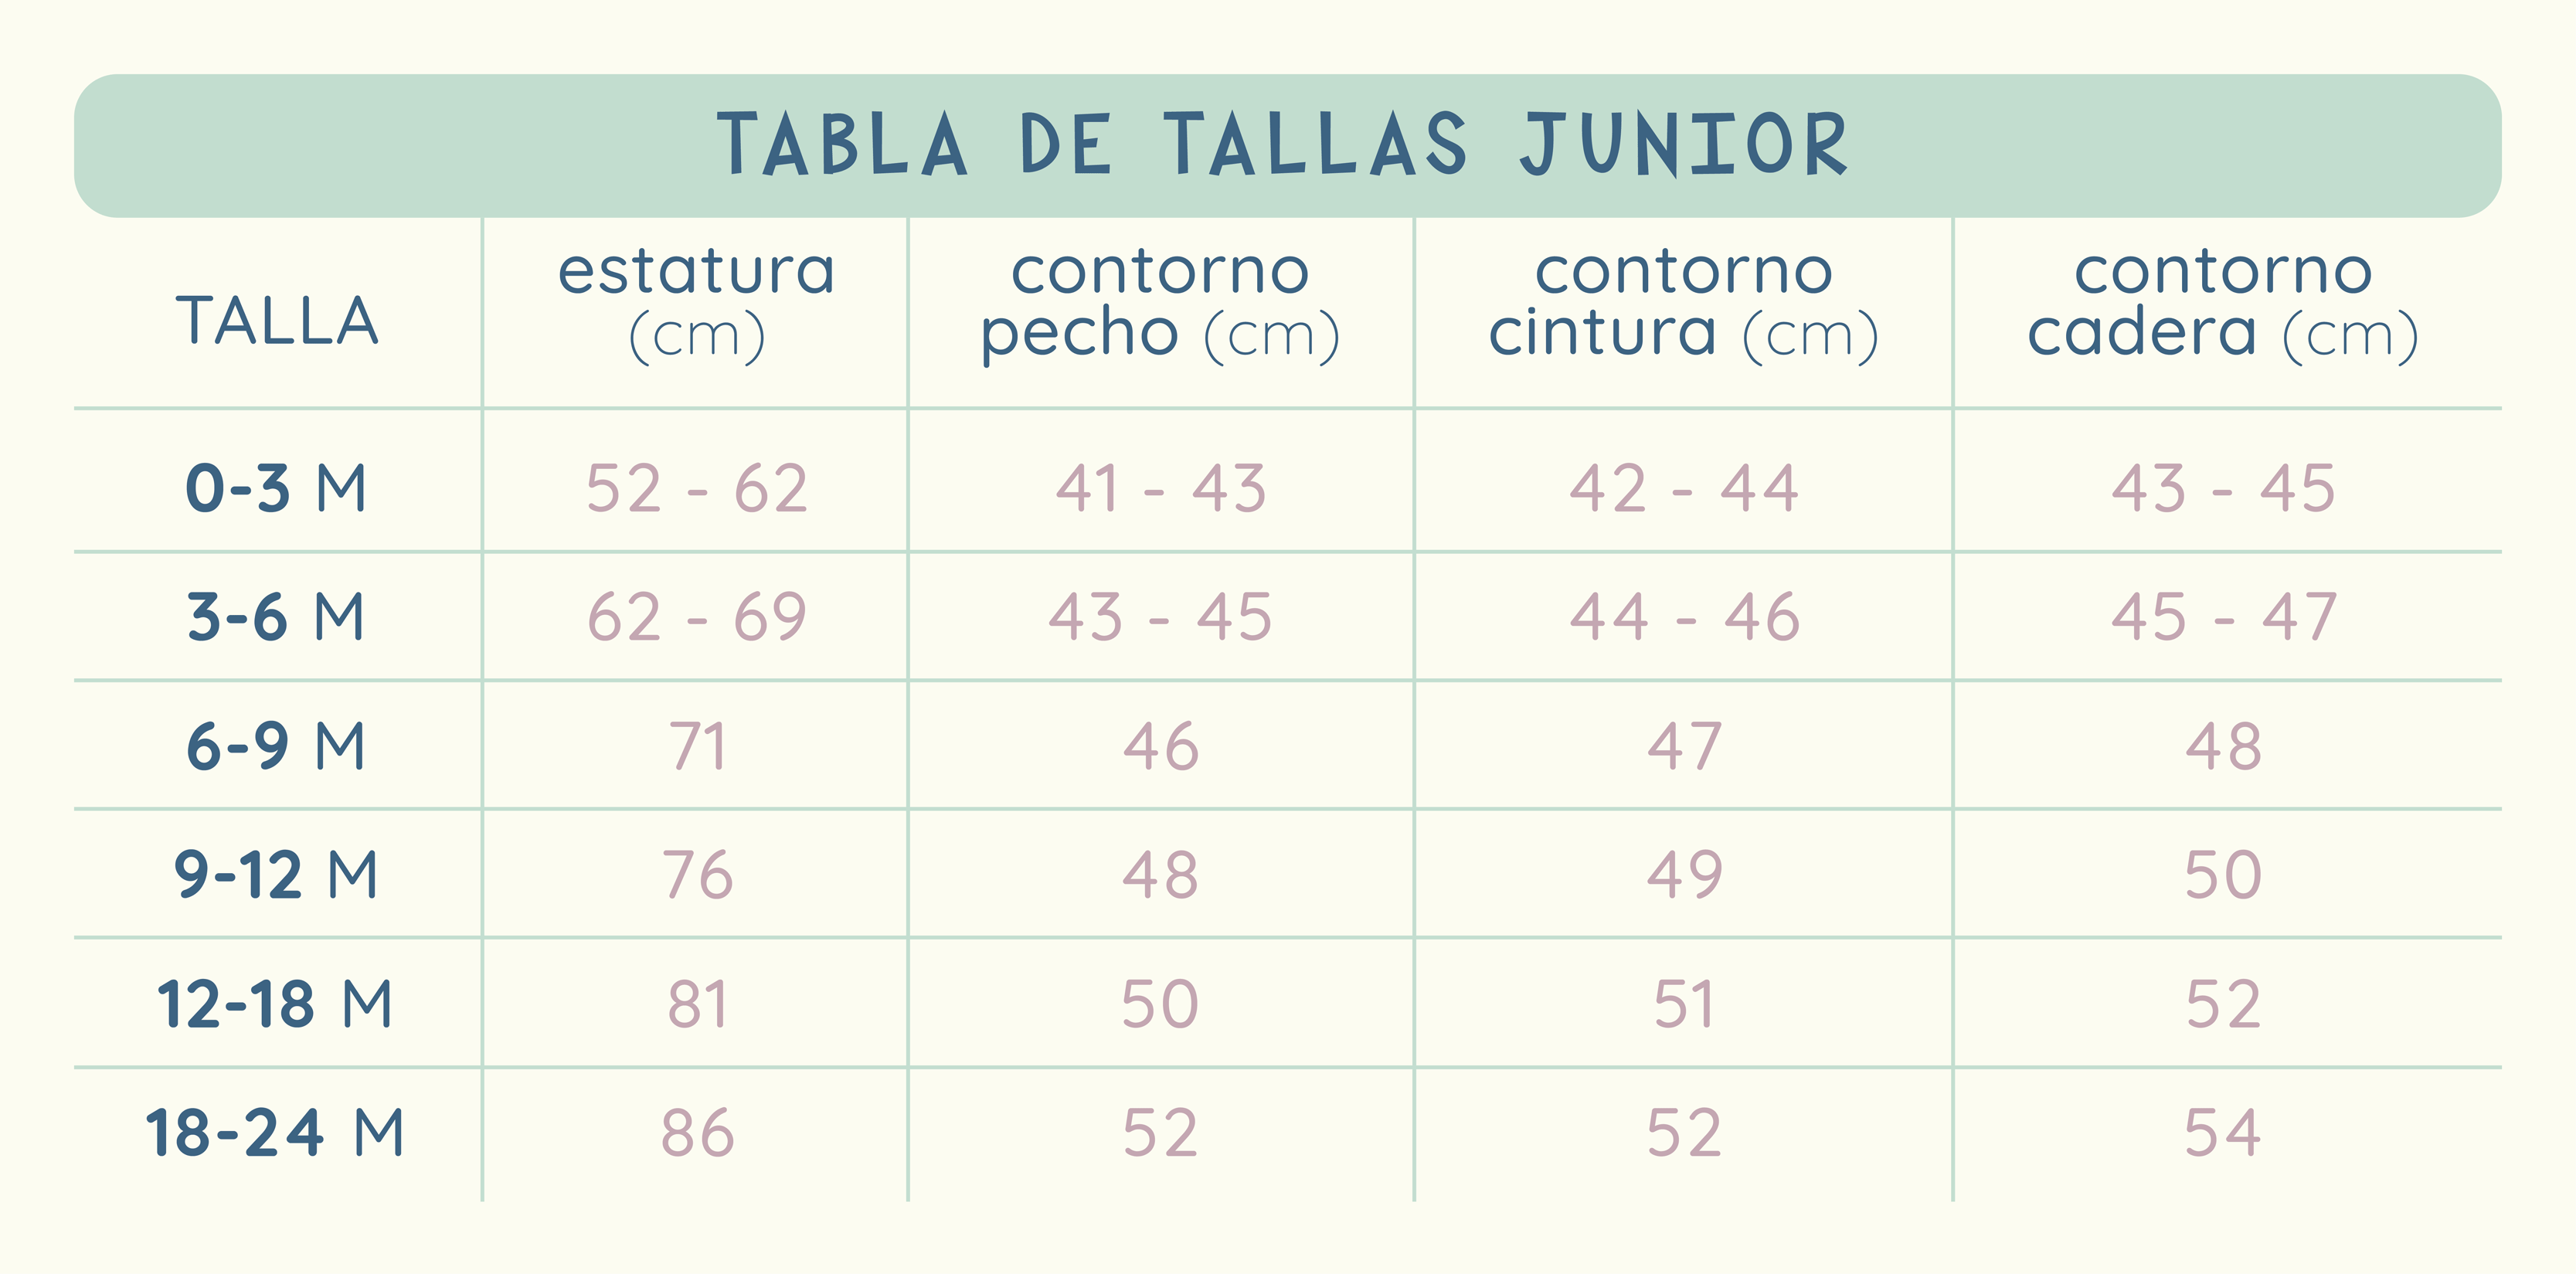 TABLA DE TALLAS JUNIOR